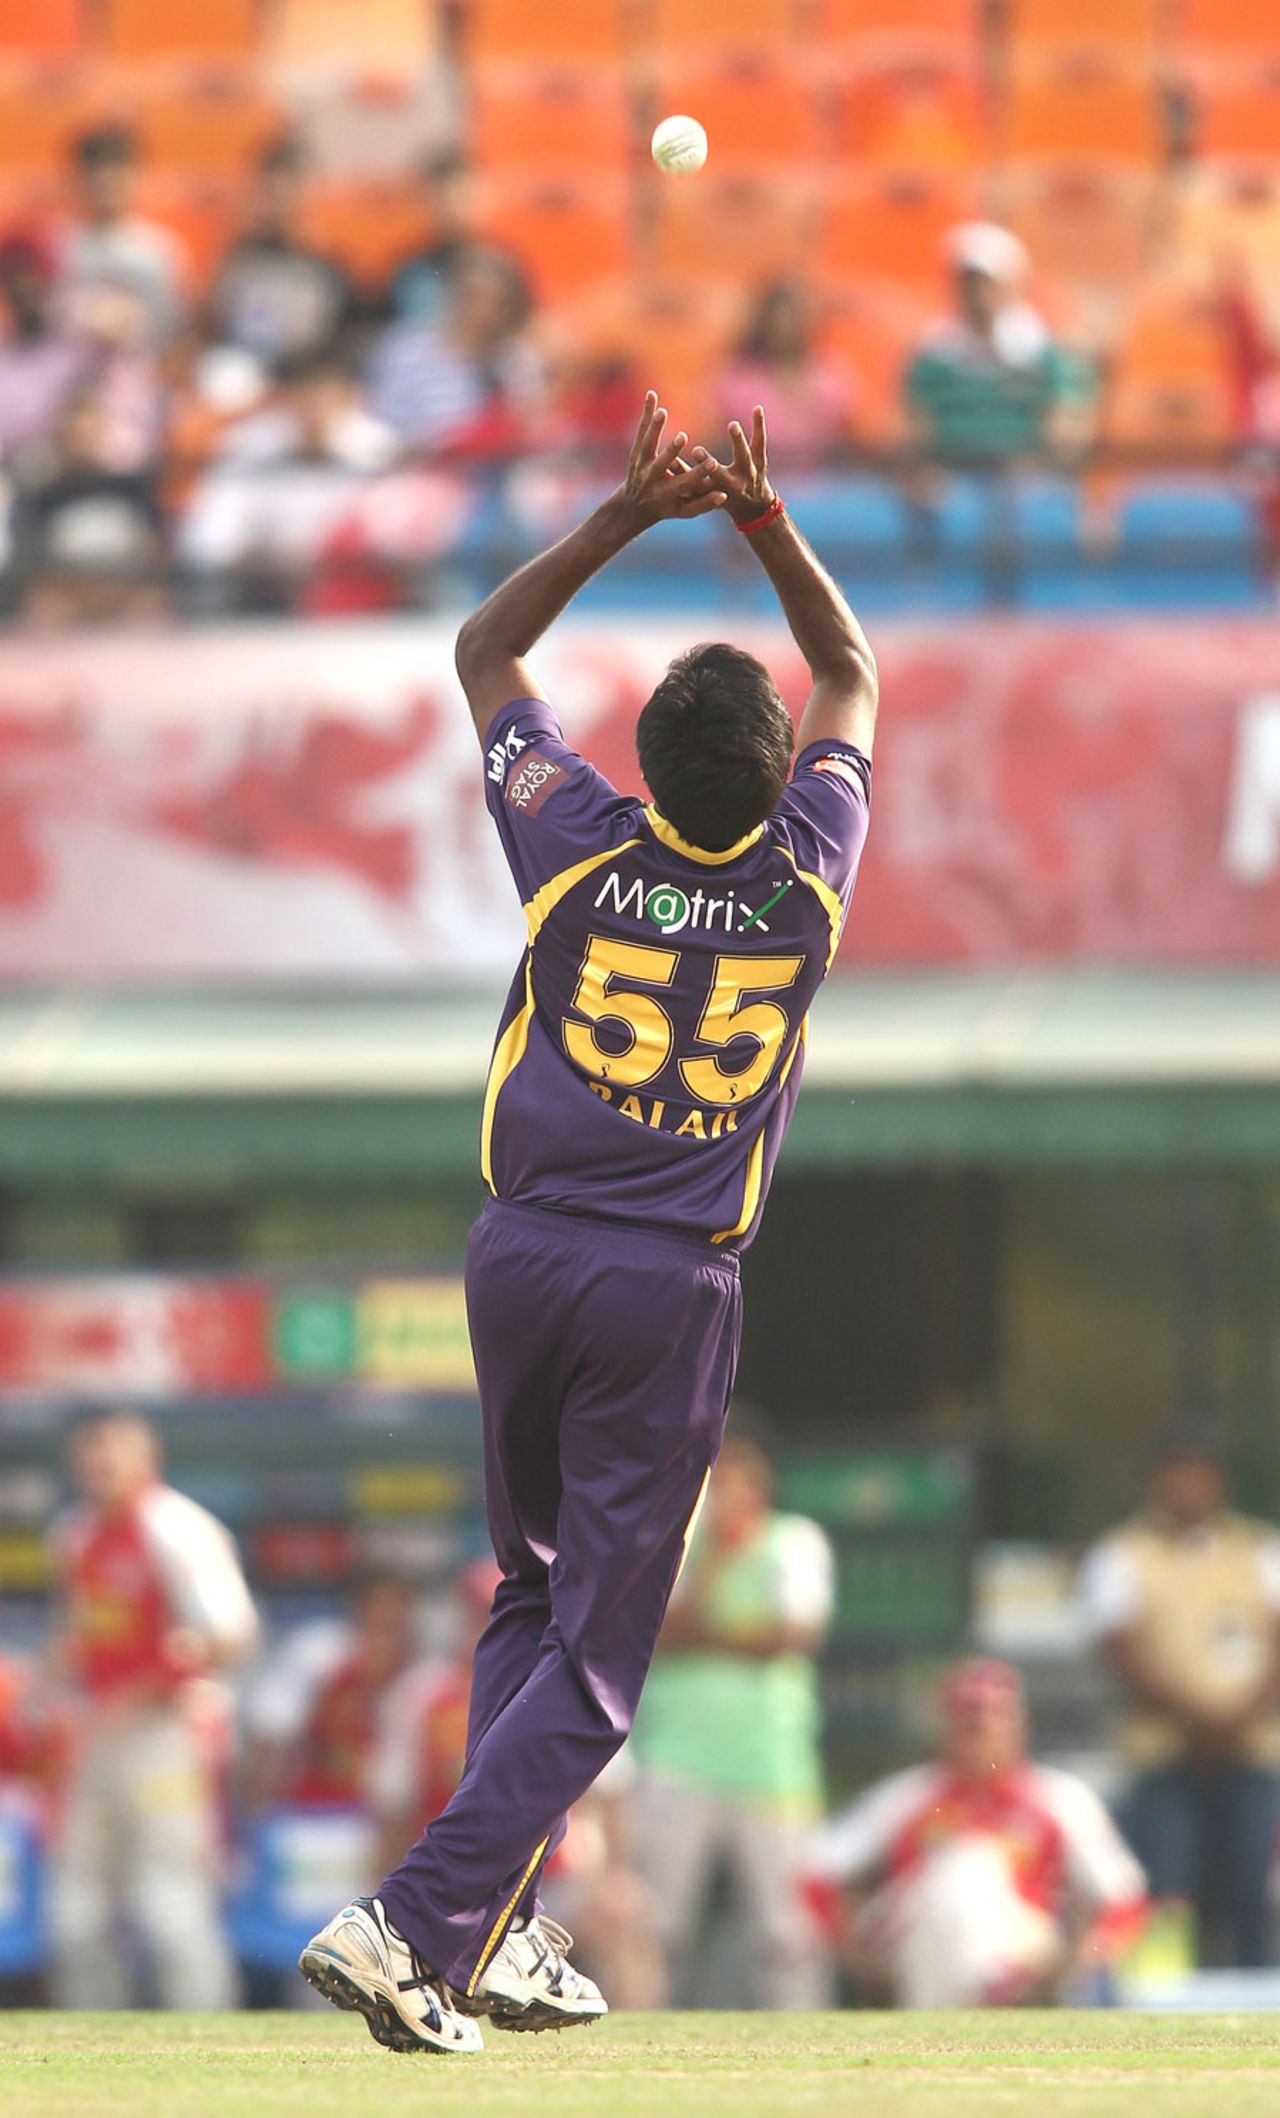 L Balaji took a catch off his own bowling to dismiss Manan Vohra, Kings Xi Punjab v Kolkata Knight Riders, IPL 2013, Mohali, April 16, 2013